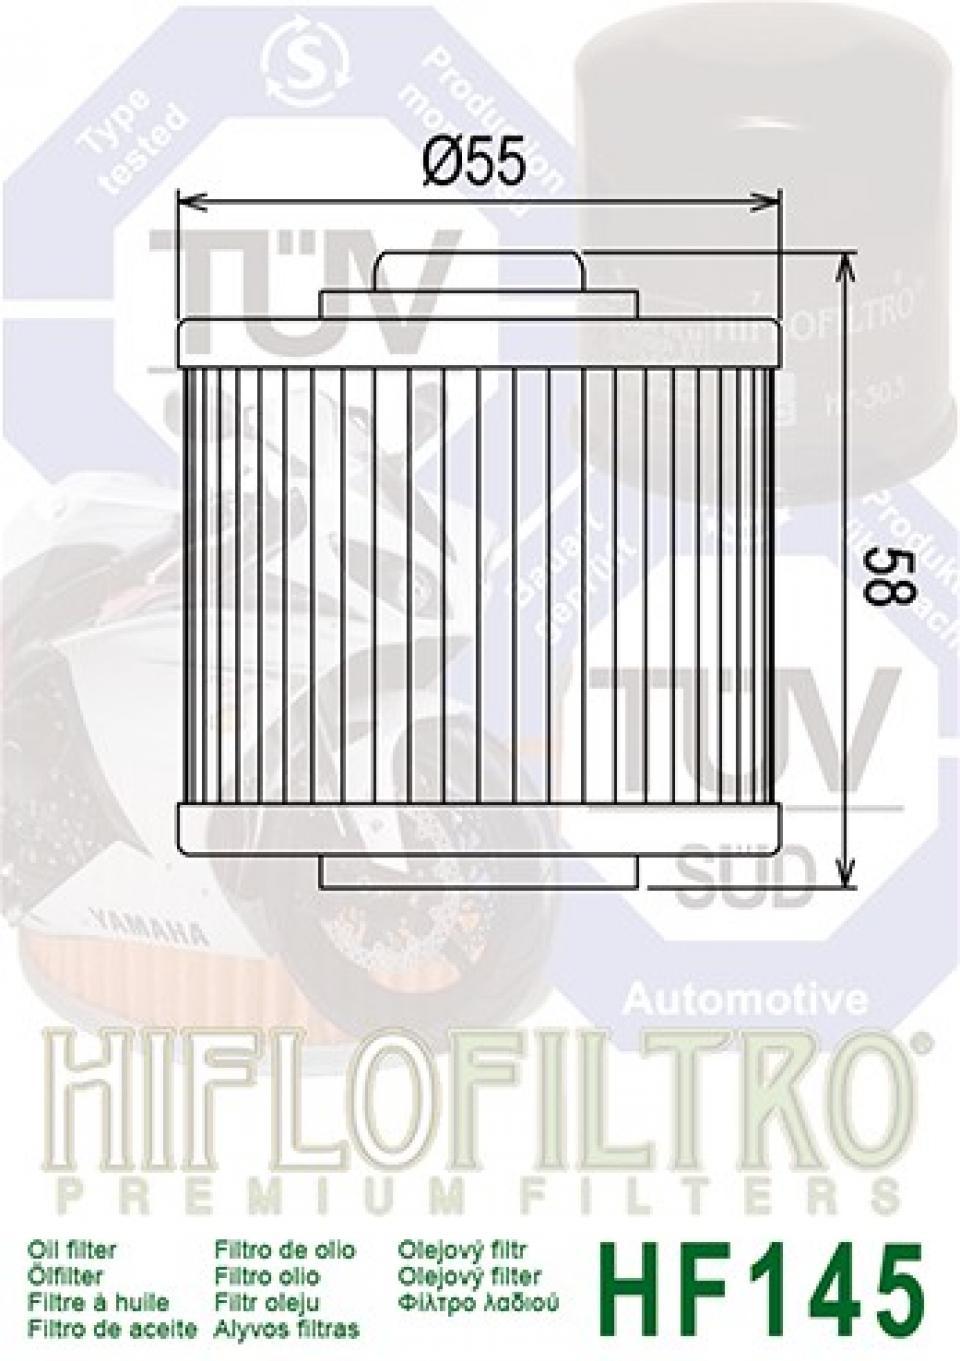 Filtre à huile Hiflofiltro pour Moto Yamaha 900 Tdm Abs 2006 à 2013 Neuf